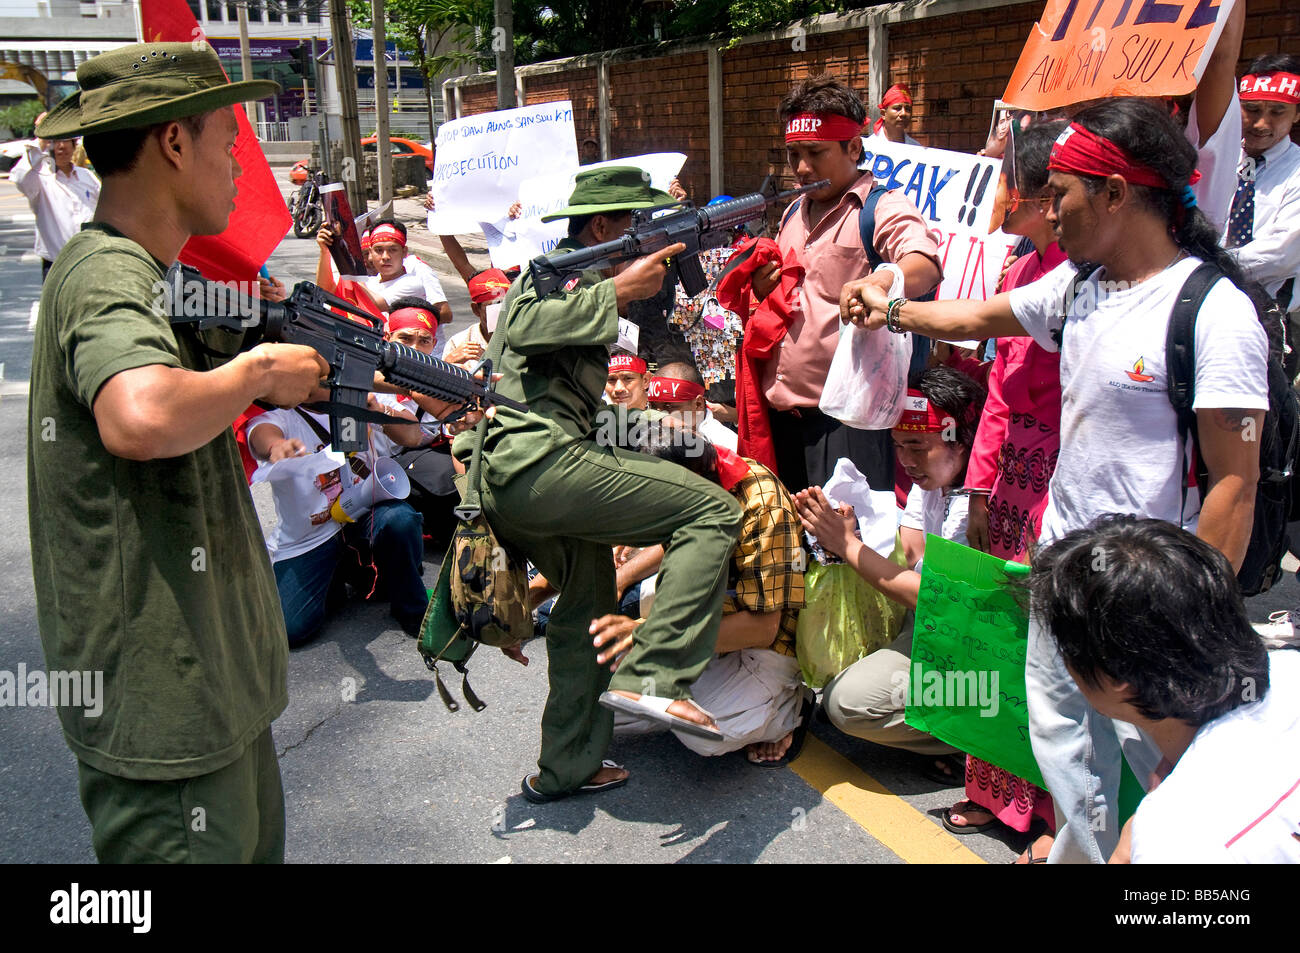 Los manifestantes pro democracia chocan con otros manifestantes vestidos como soldados birmanos frente a la Embajada birmana en Bangkok Foto de stock